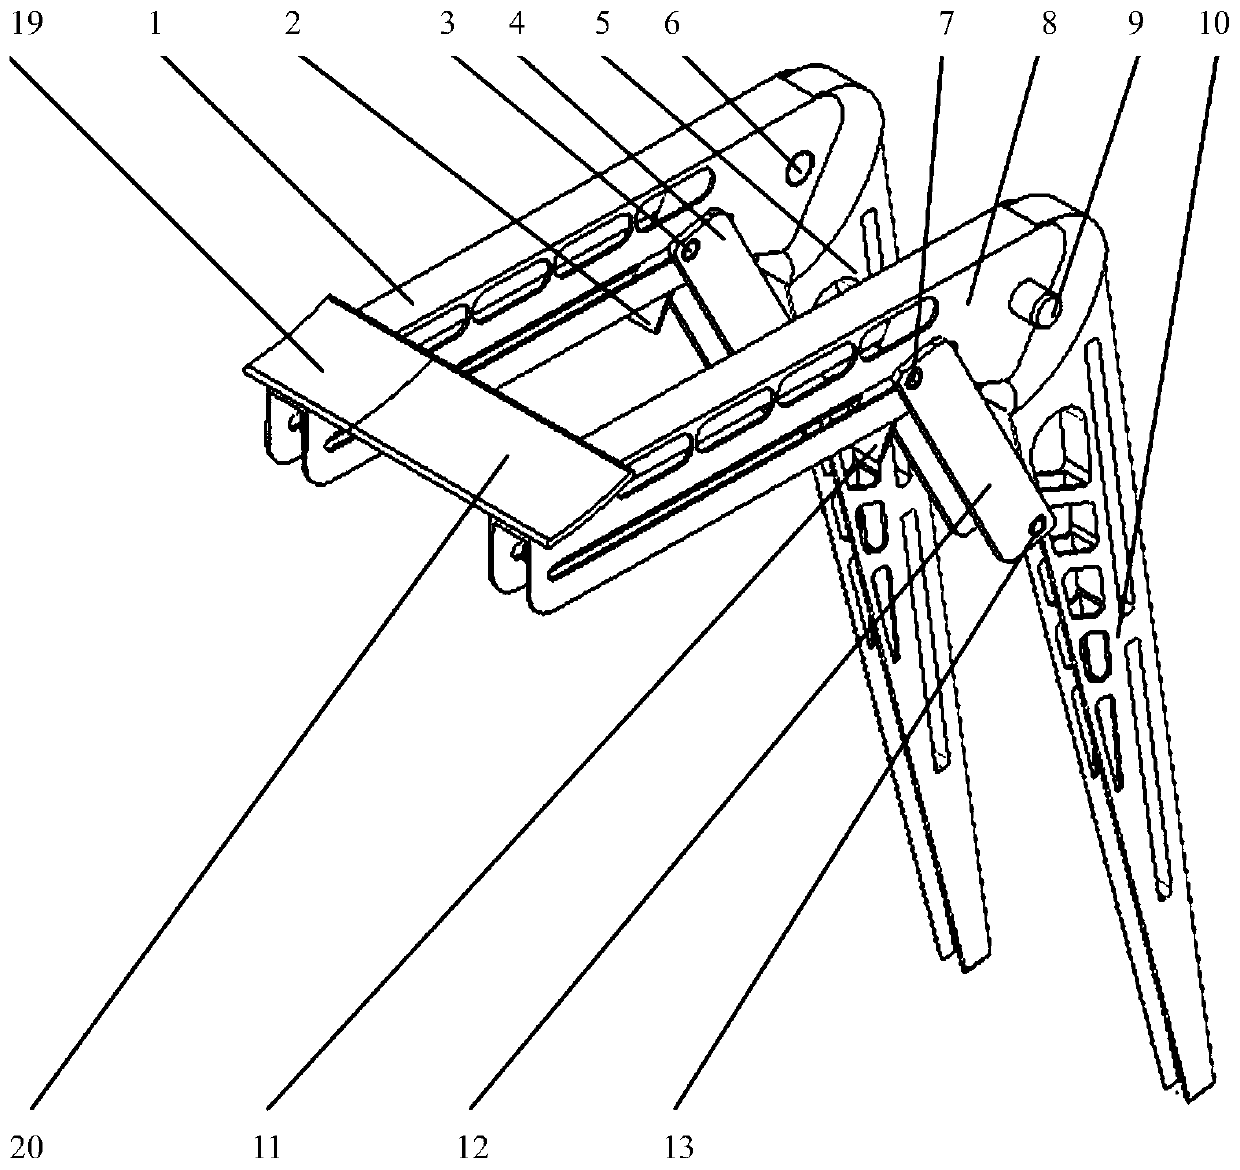 Foldable exoskeleton moving seat